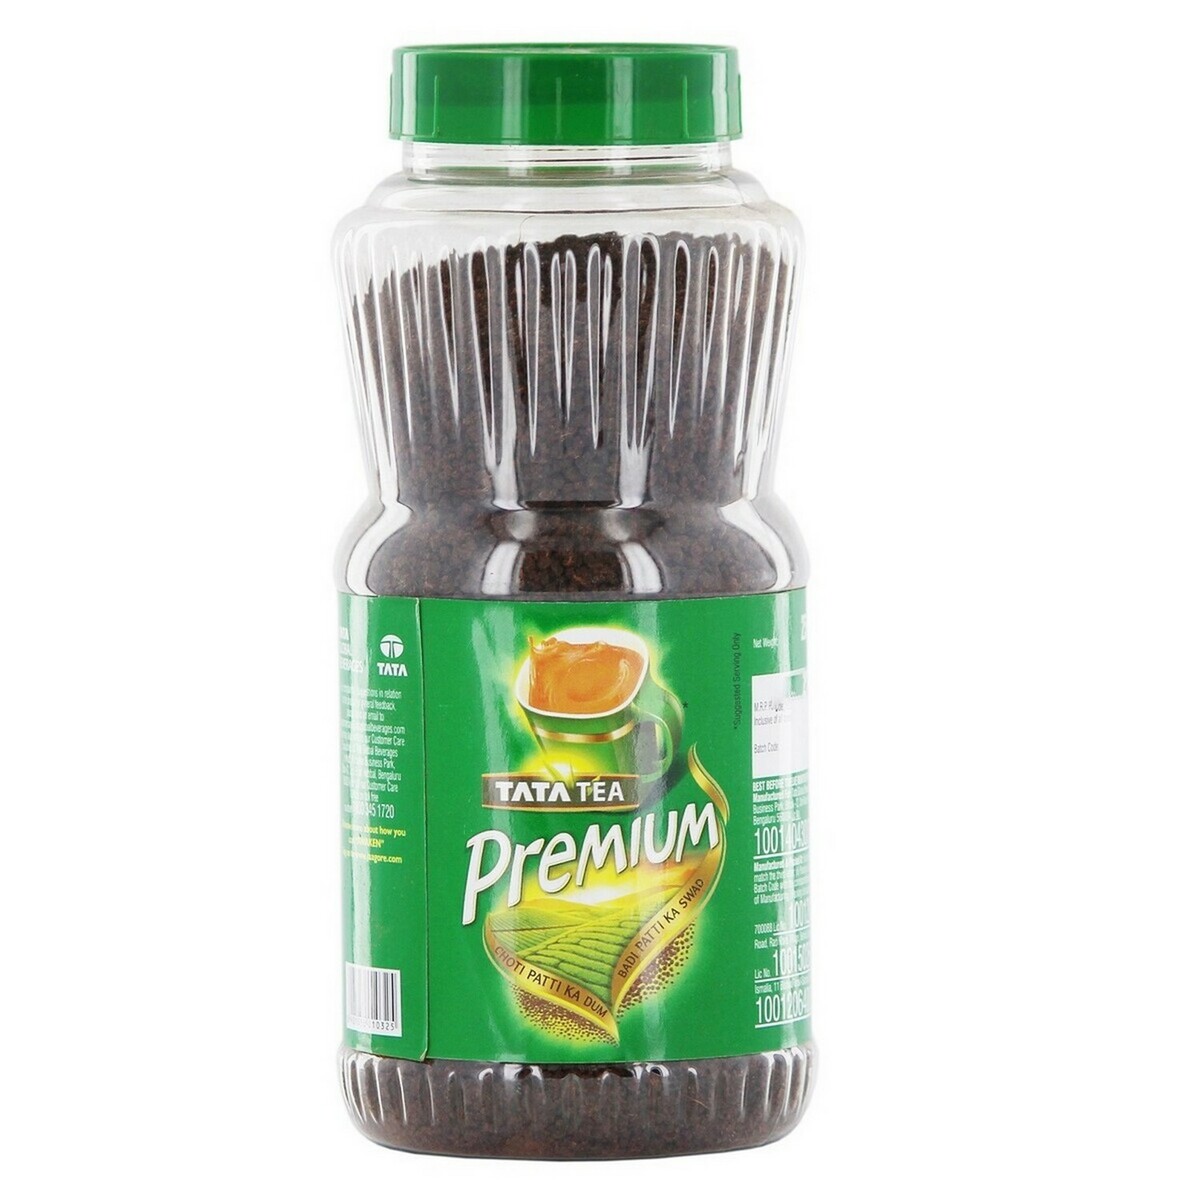 Tata Premium Leaf Tea Jar 250g